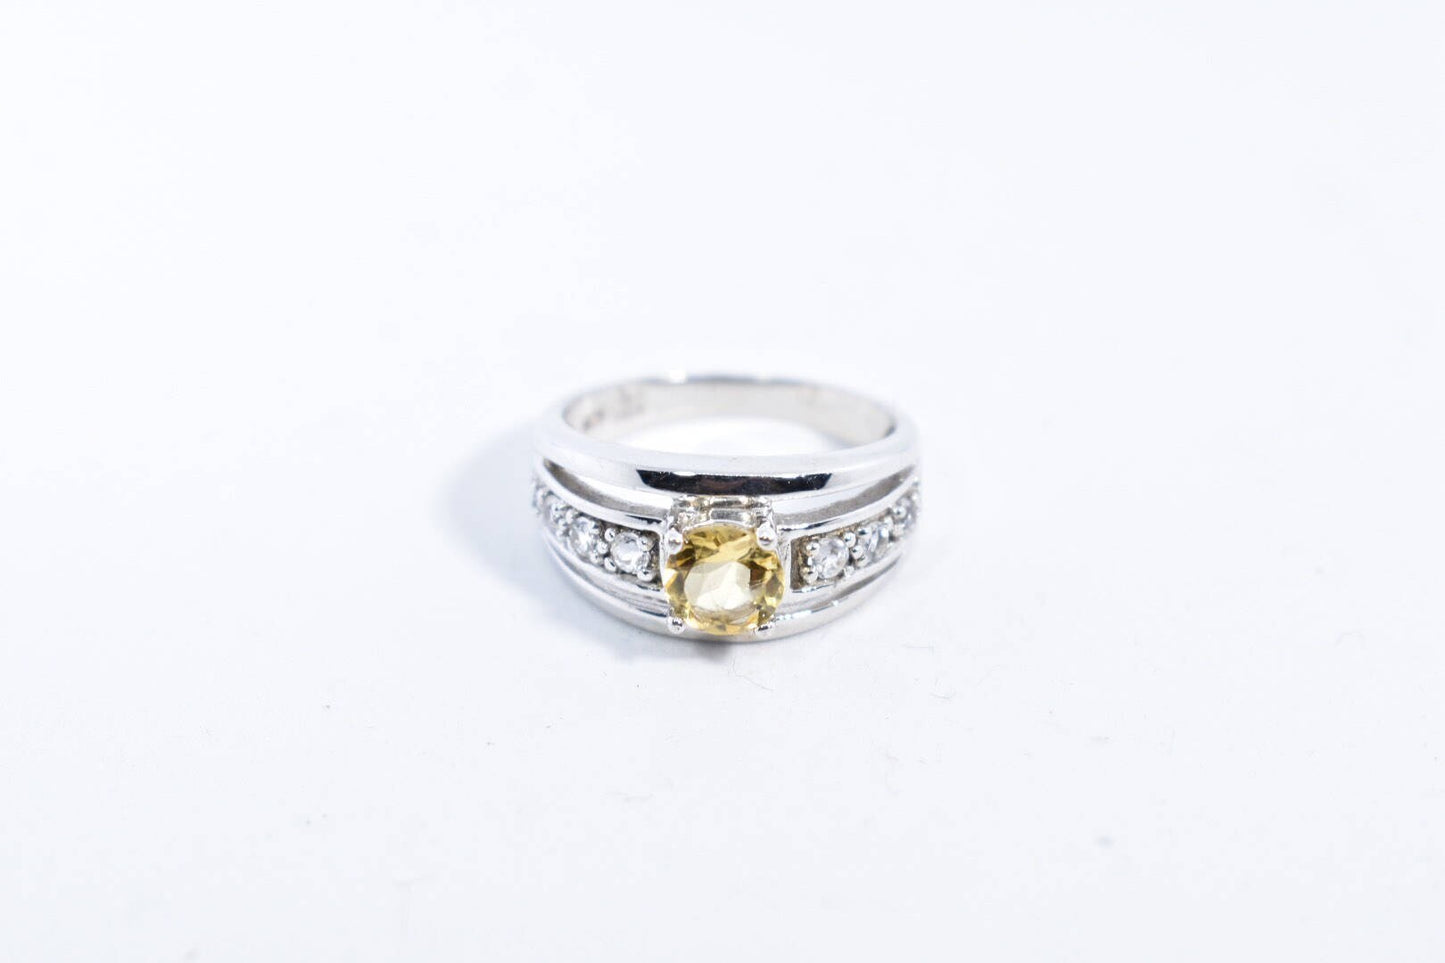 Vintage Golden Citrine Ring 925 Sterling Silver